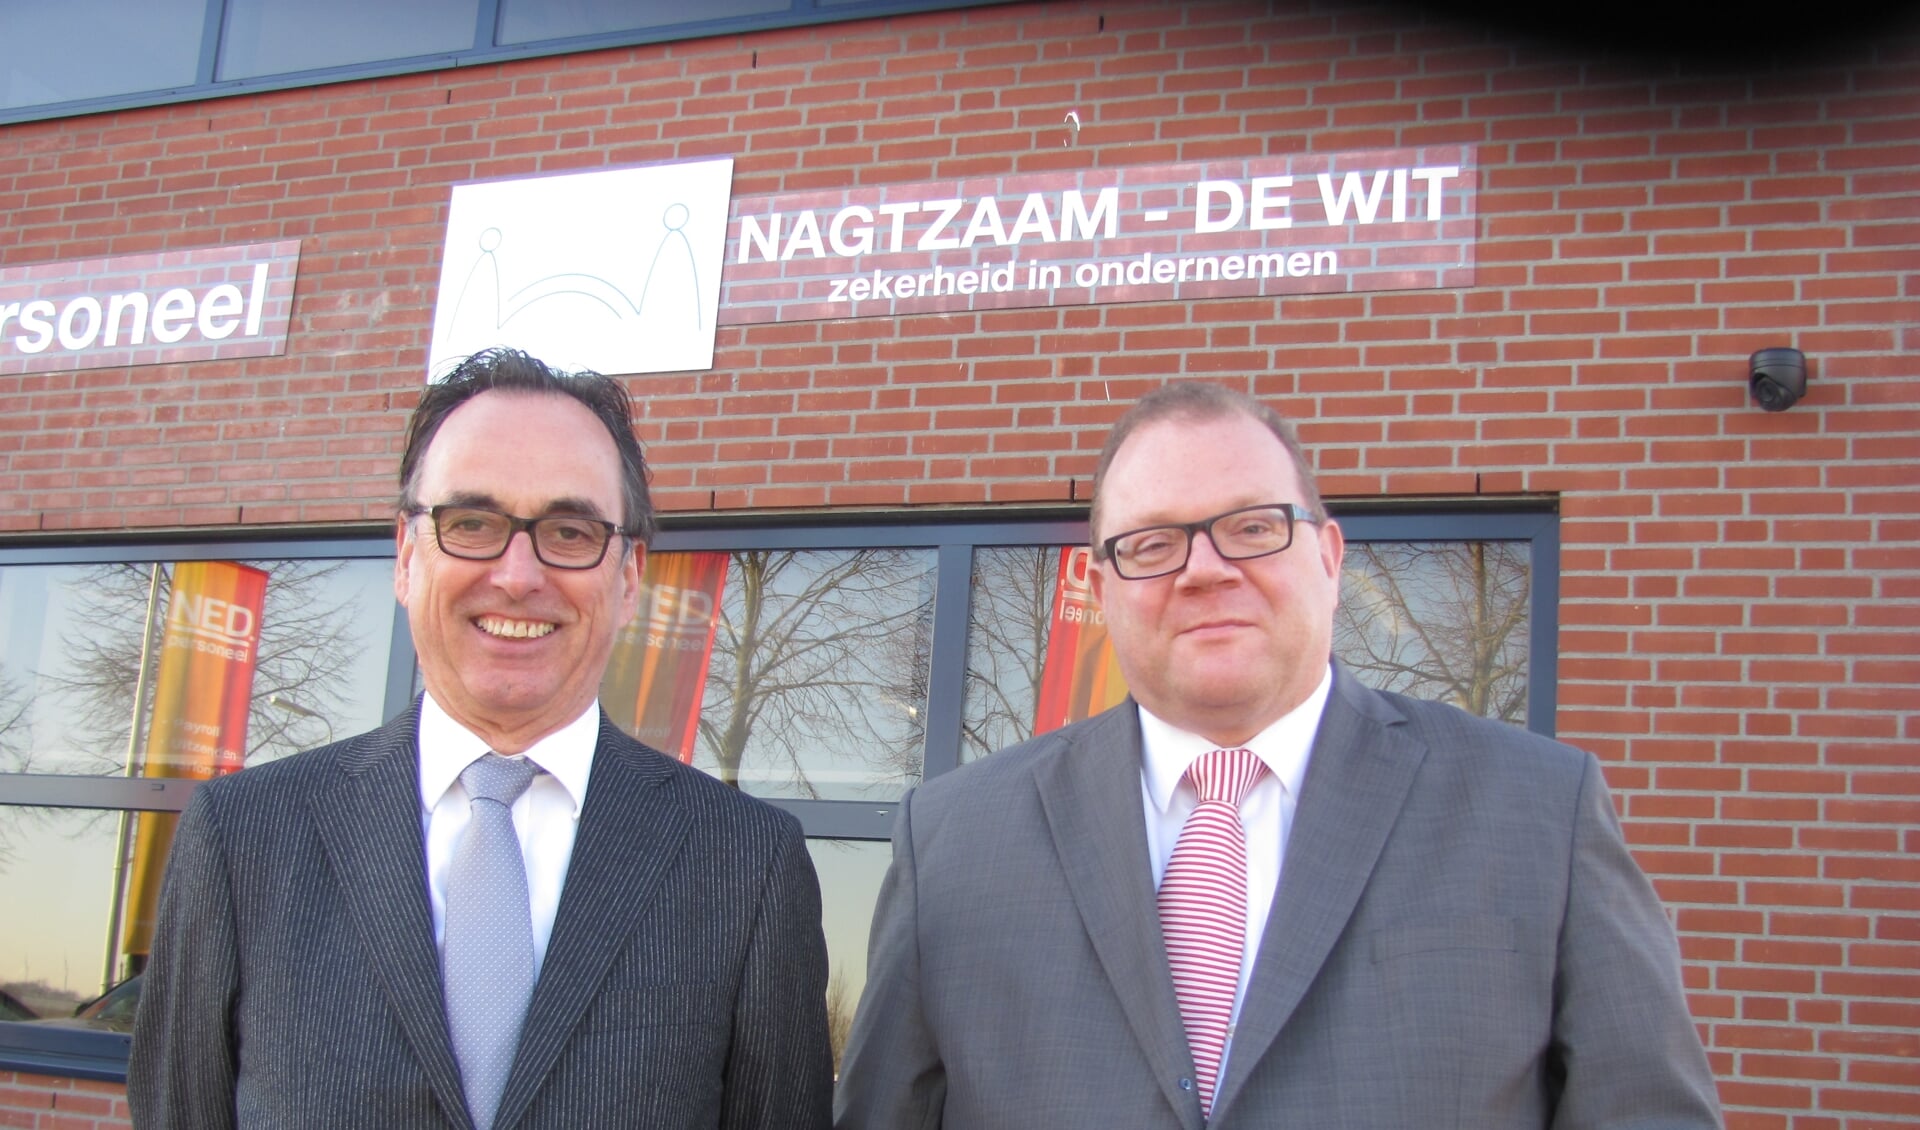 Hans Nagtzaam en Jan de Wit voor het nieuwe kantoor van N-DW Assurantiën BV in Zundert. FOTO ADDO SPRANGERS